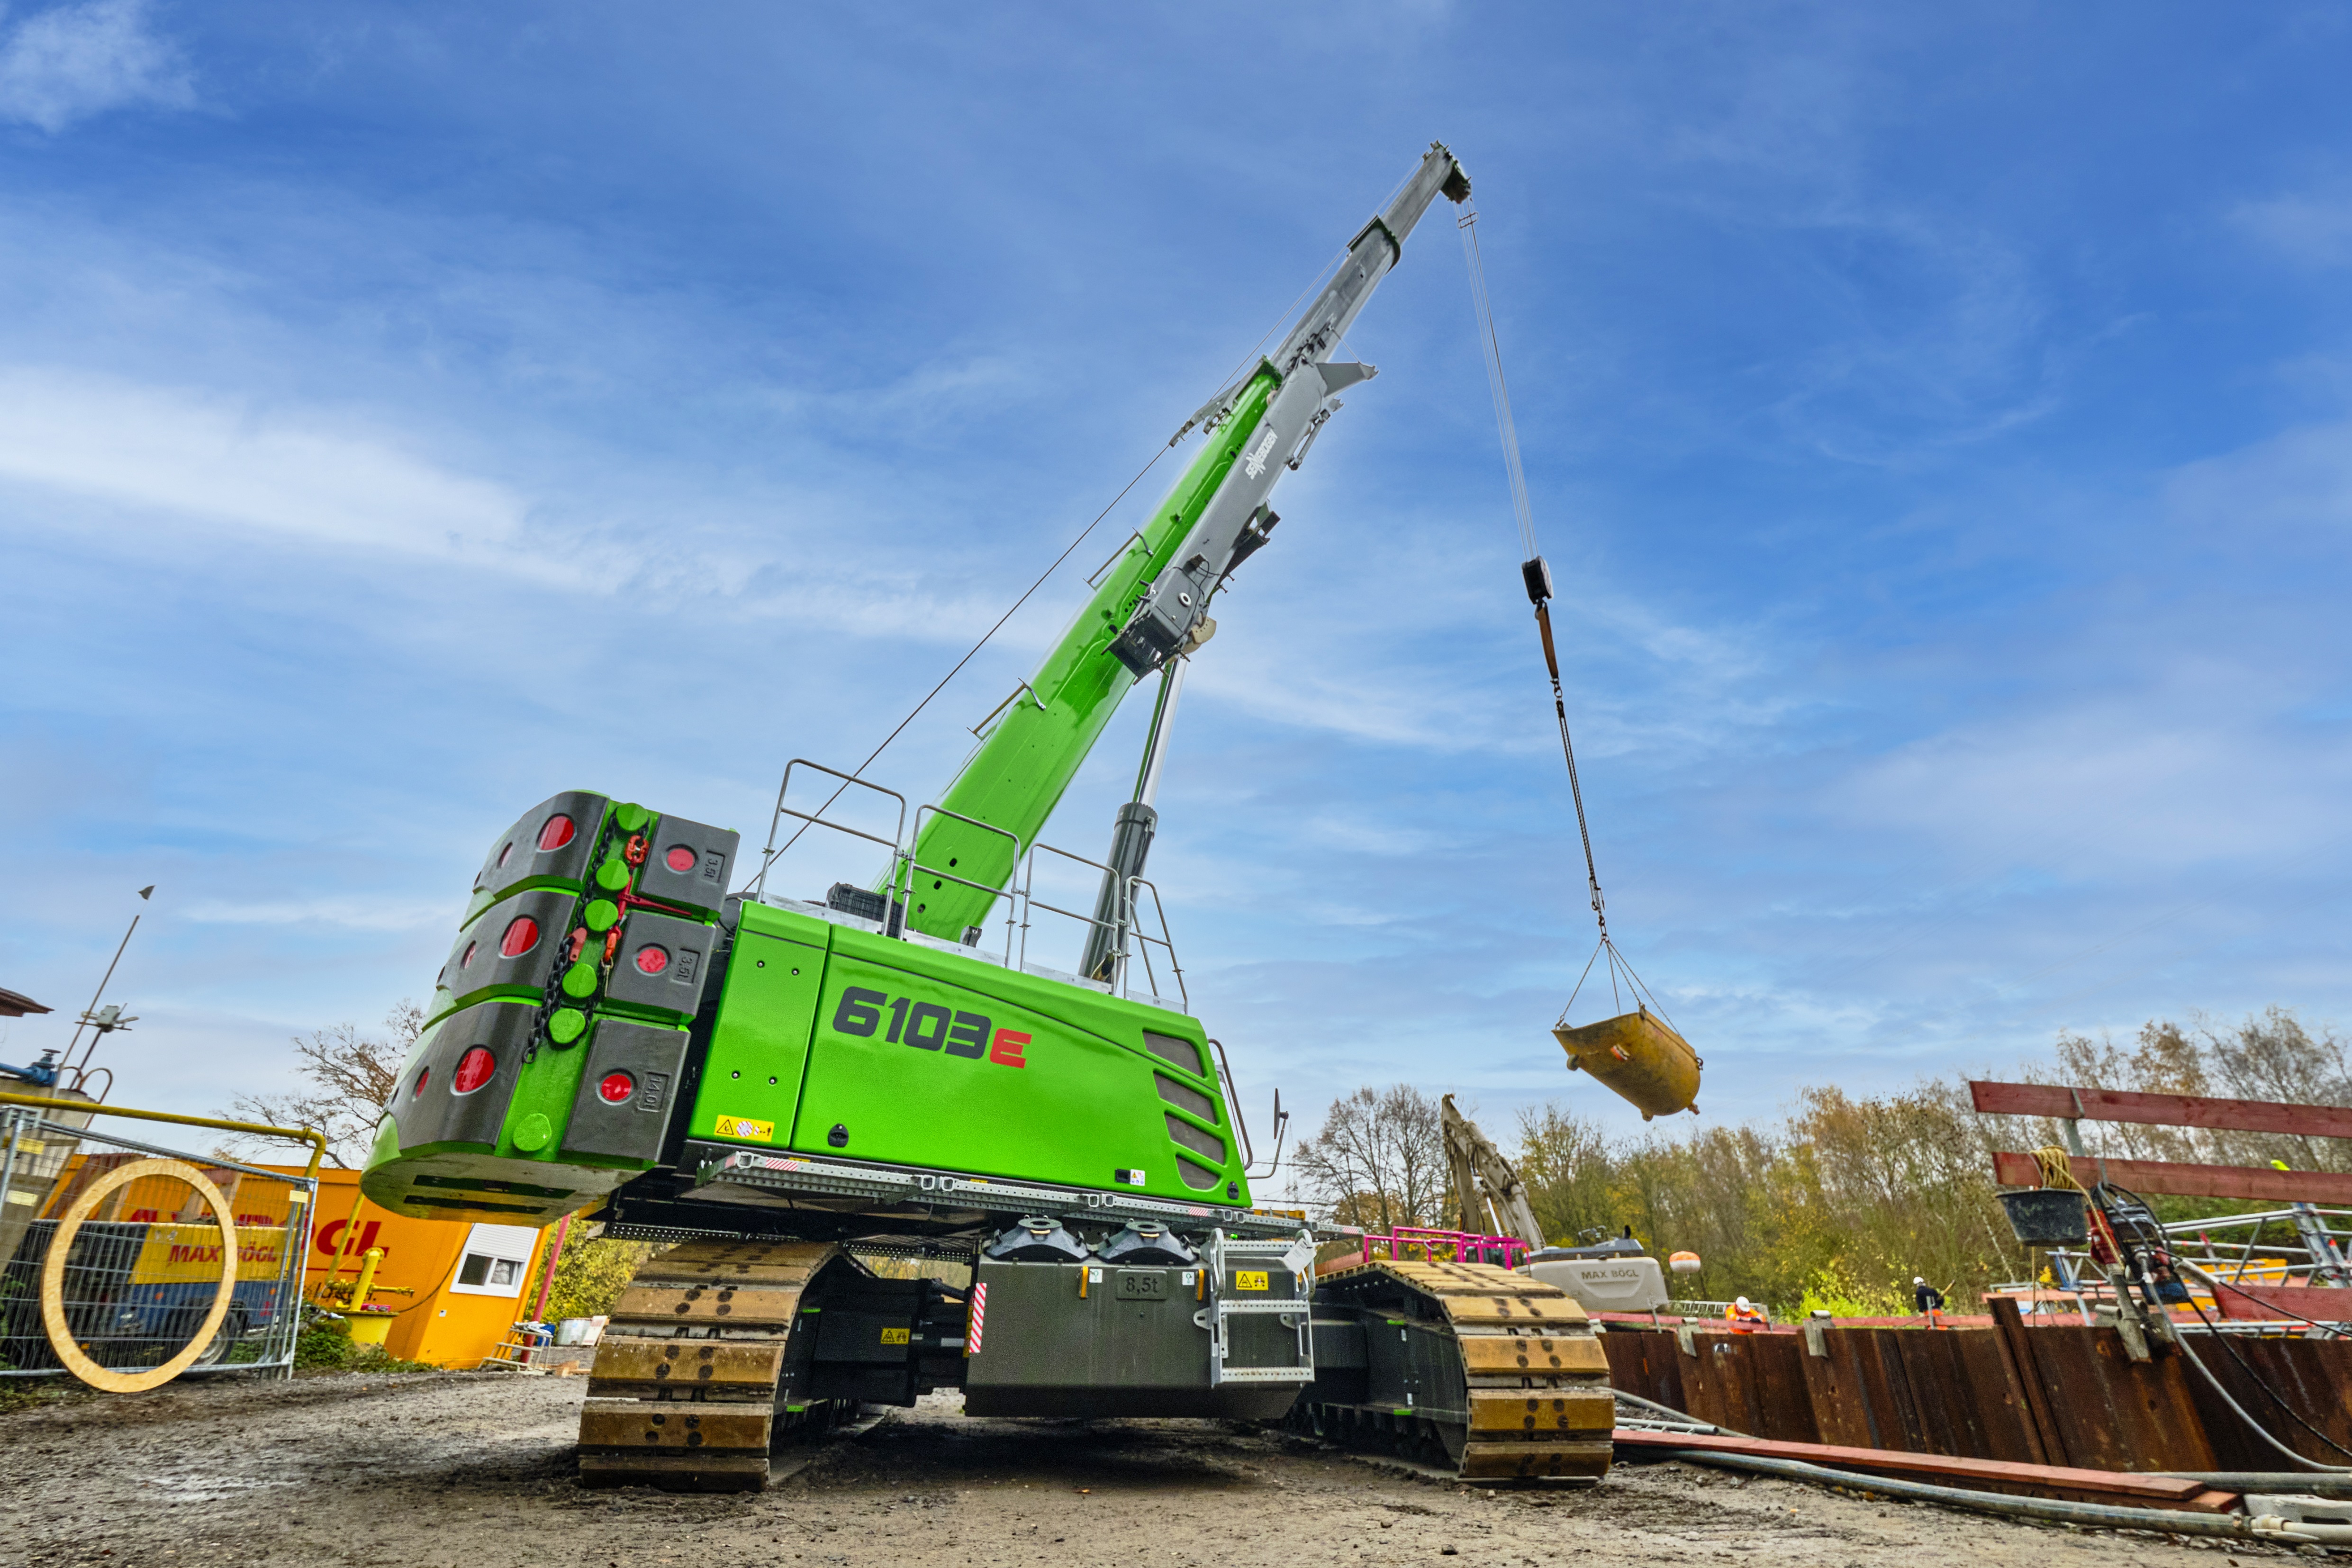 UK Suppliers of Sennebogen Mobile Crane Rental